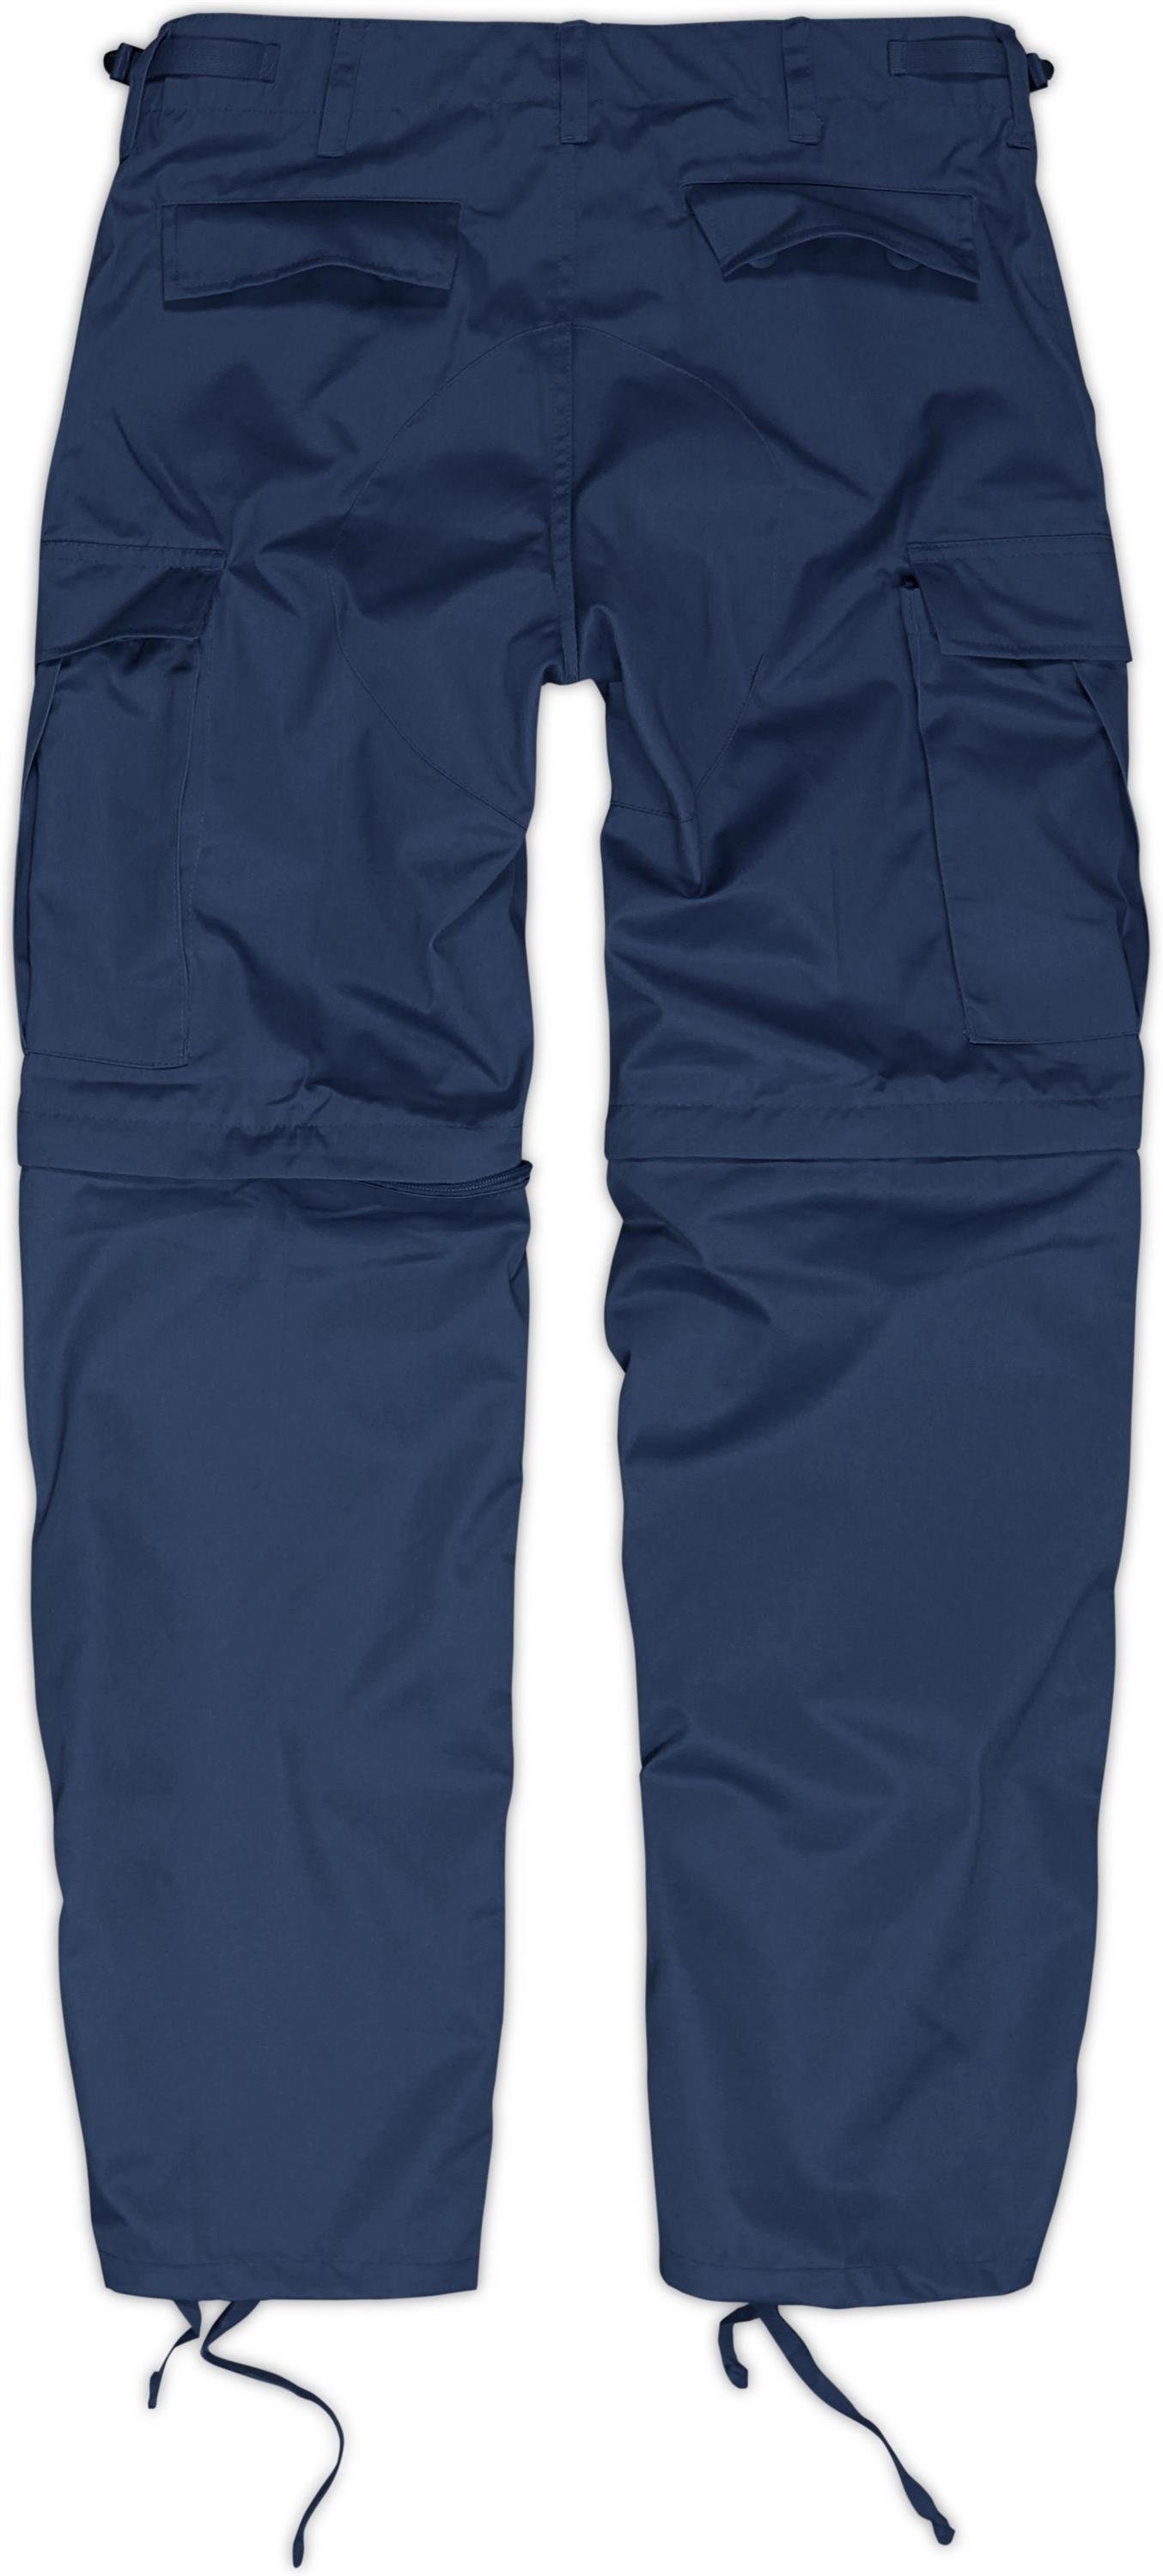 Outdoorhose Herren normani Feldhose abtrennbaren Zip-Off BDU Navy Hosenbeinen per 2-in-1 Pioneer Zip-off-Hose Rangerhose mit Reißverschluss